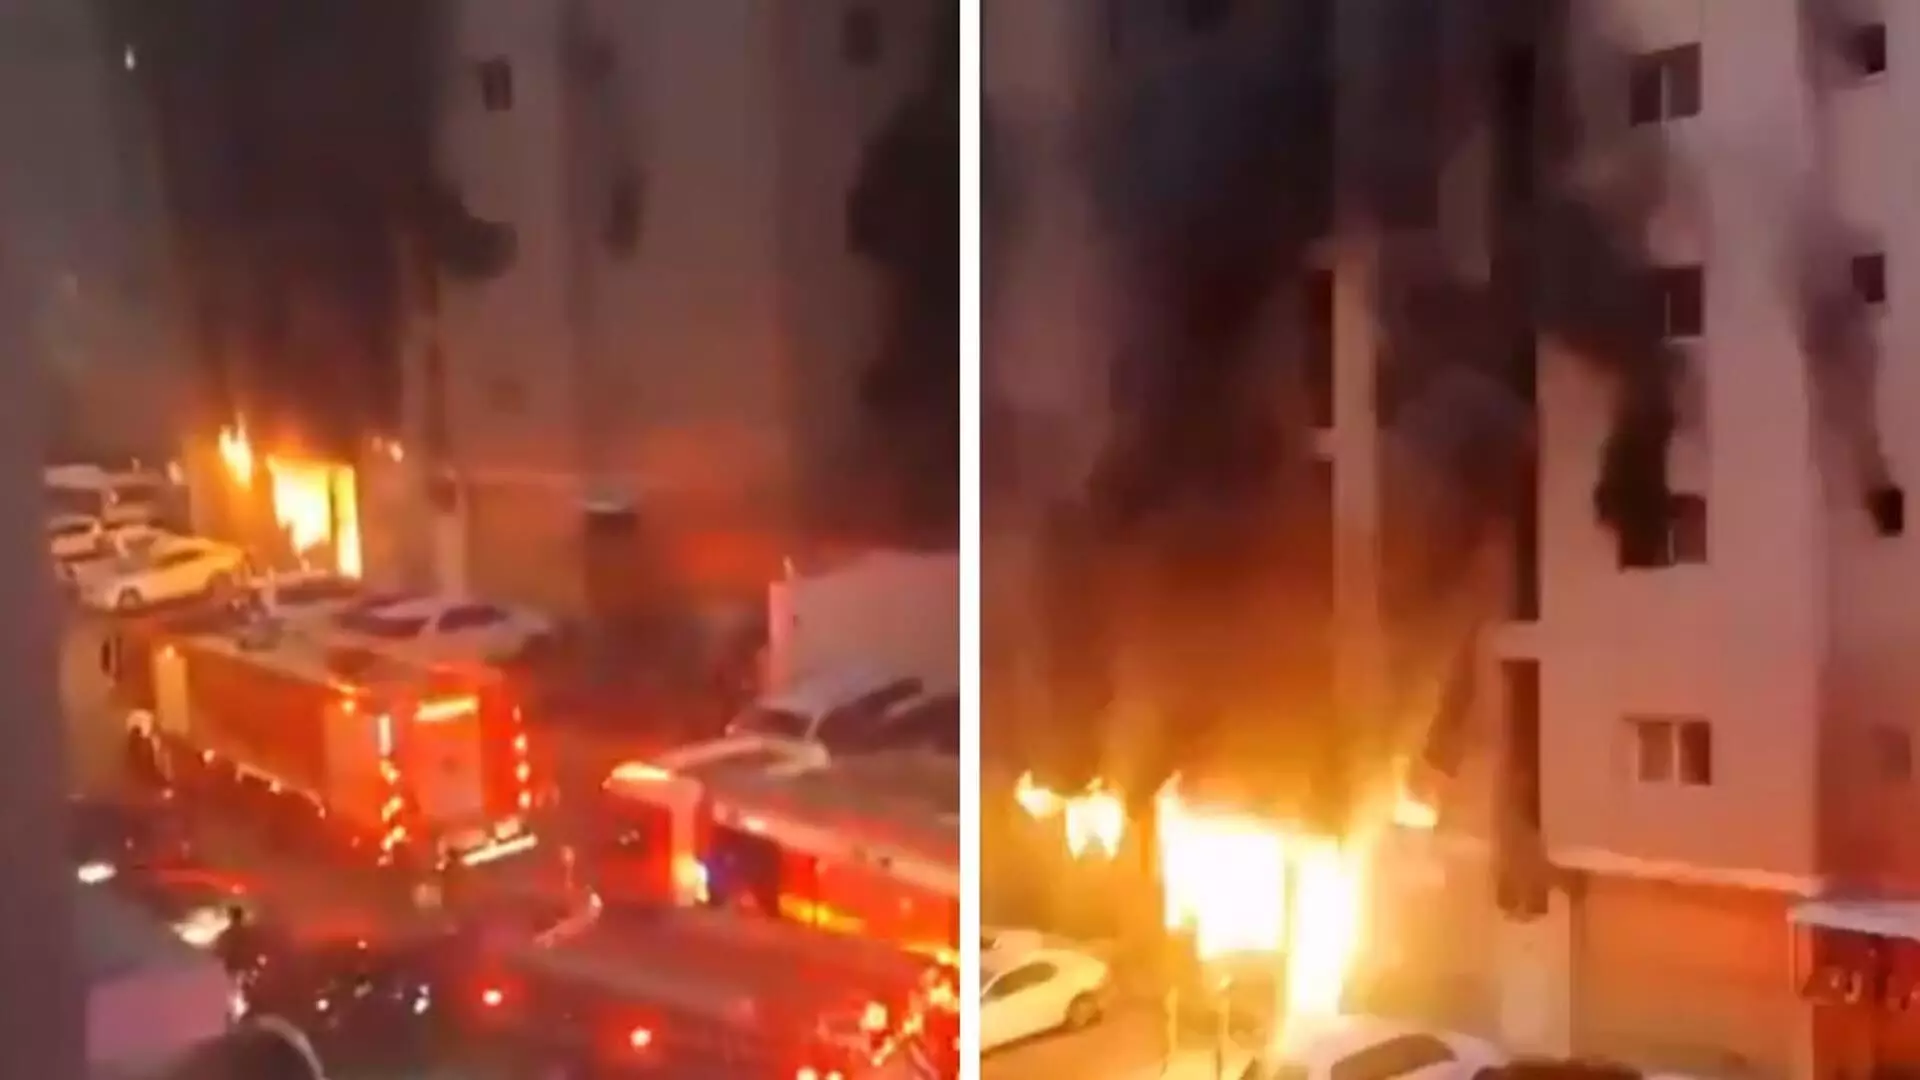 Kuwait fire tragedy: आग में मारे गए मुंबई के शख्स का अंतिम संस्कार कल चारकोप में होगा